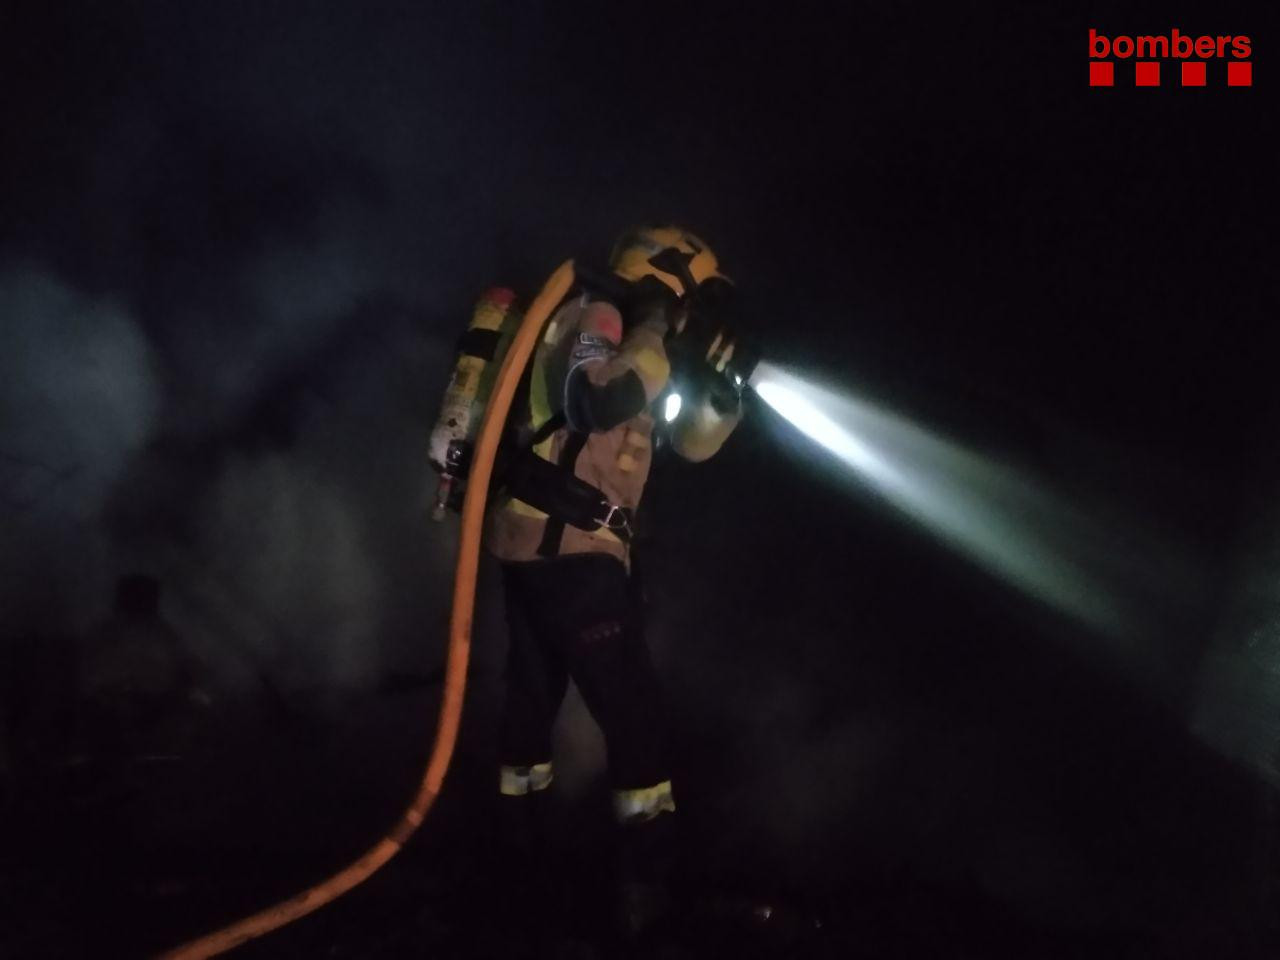 Un bombero durante la extinción del fuego en las barracas de Terrassa / BOMBERS